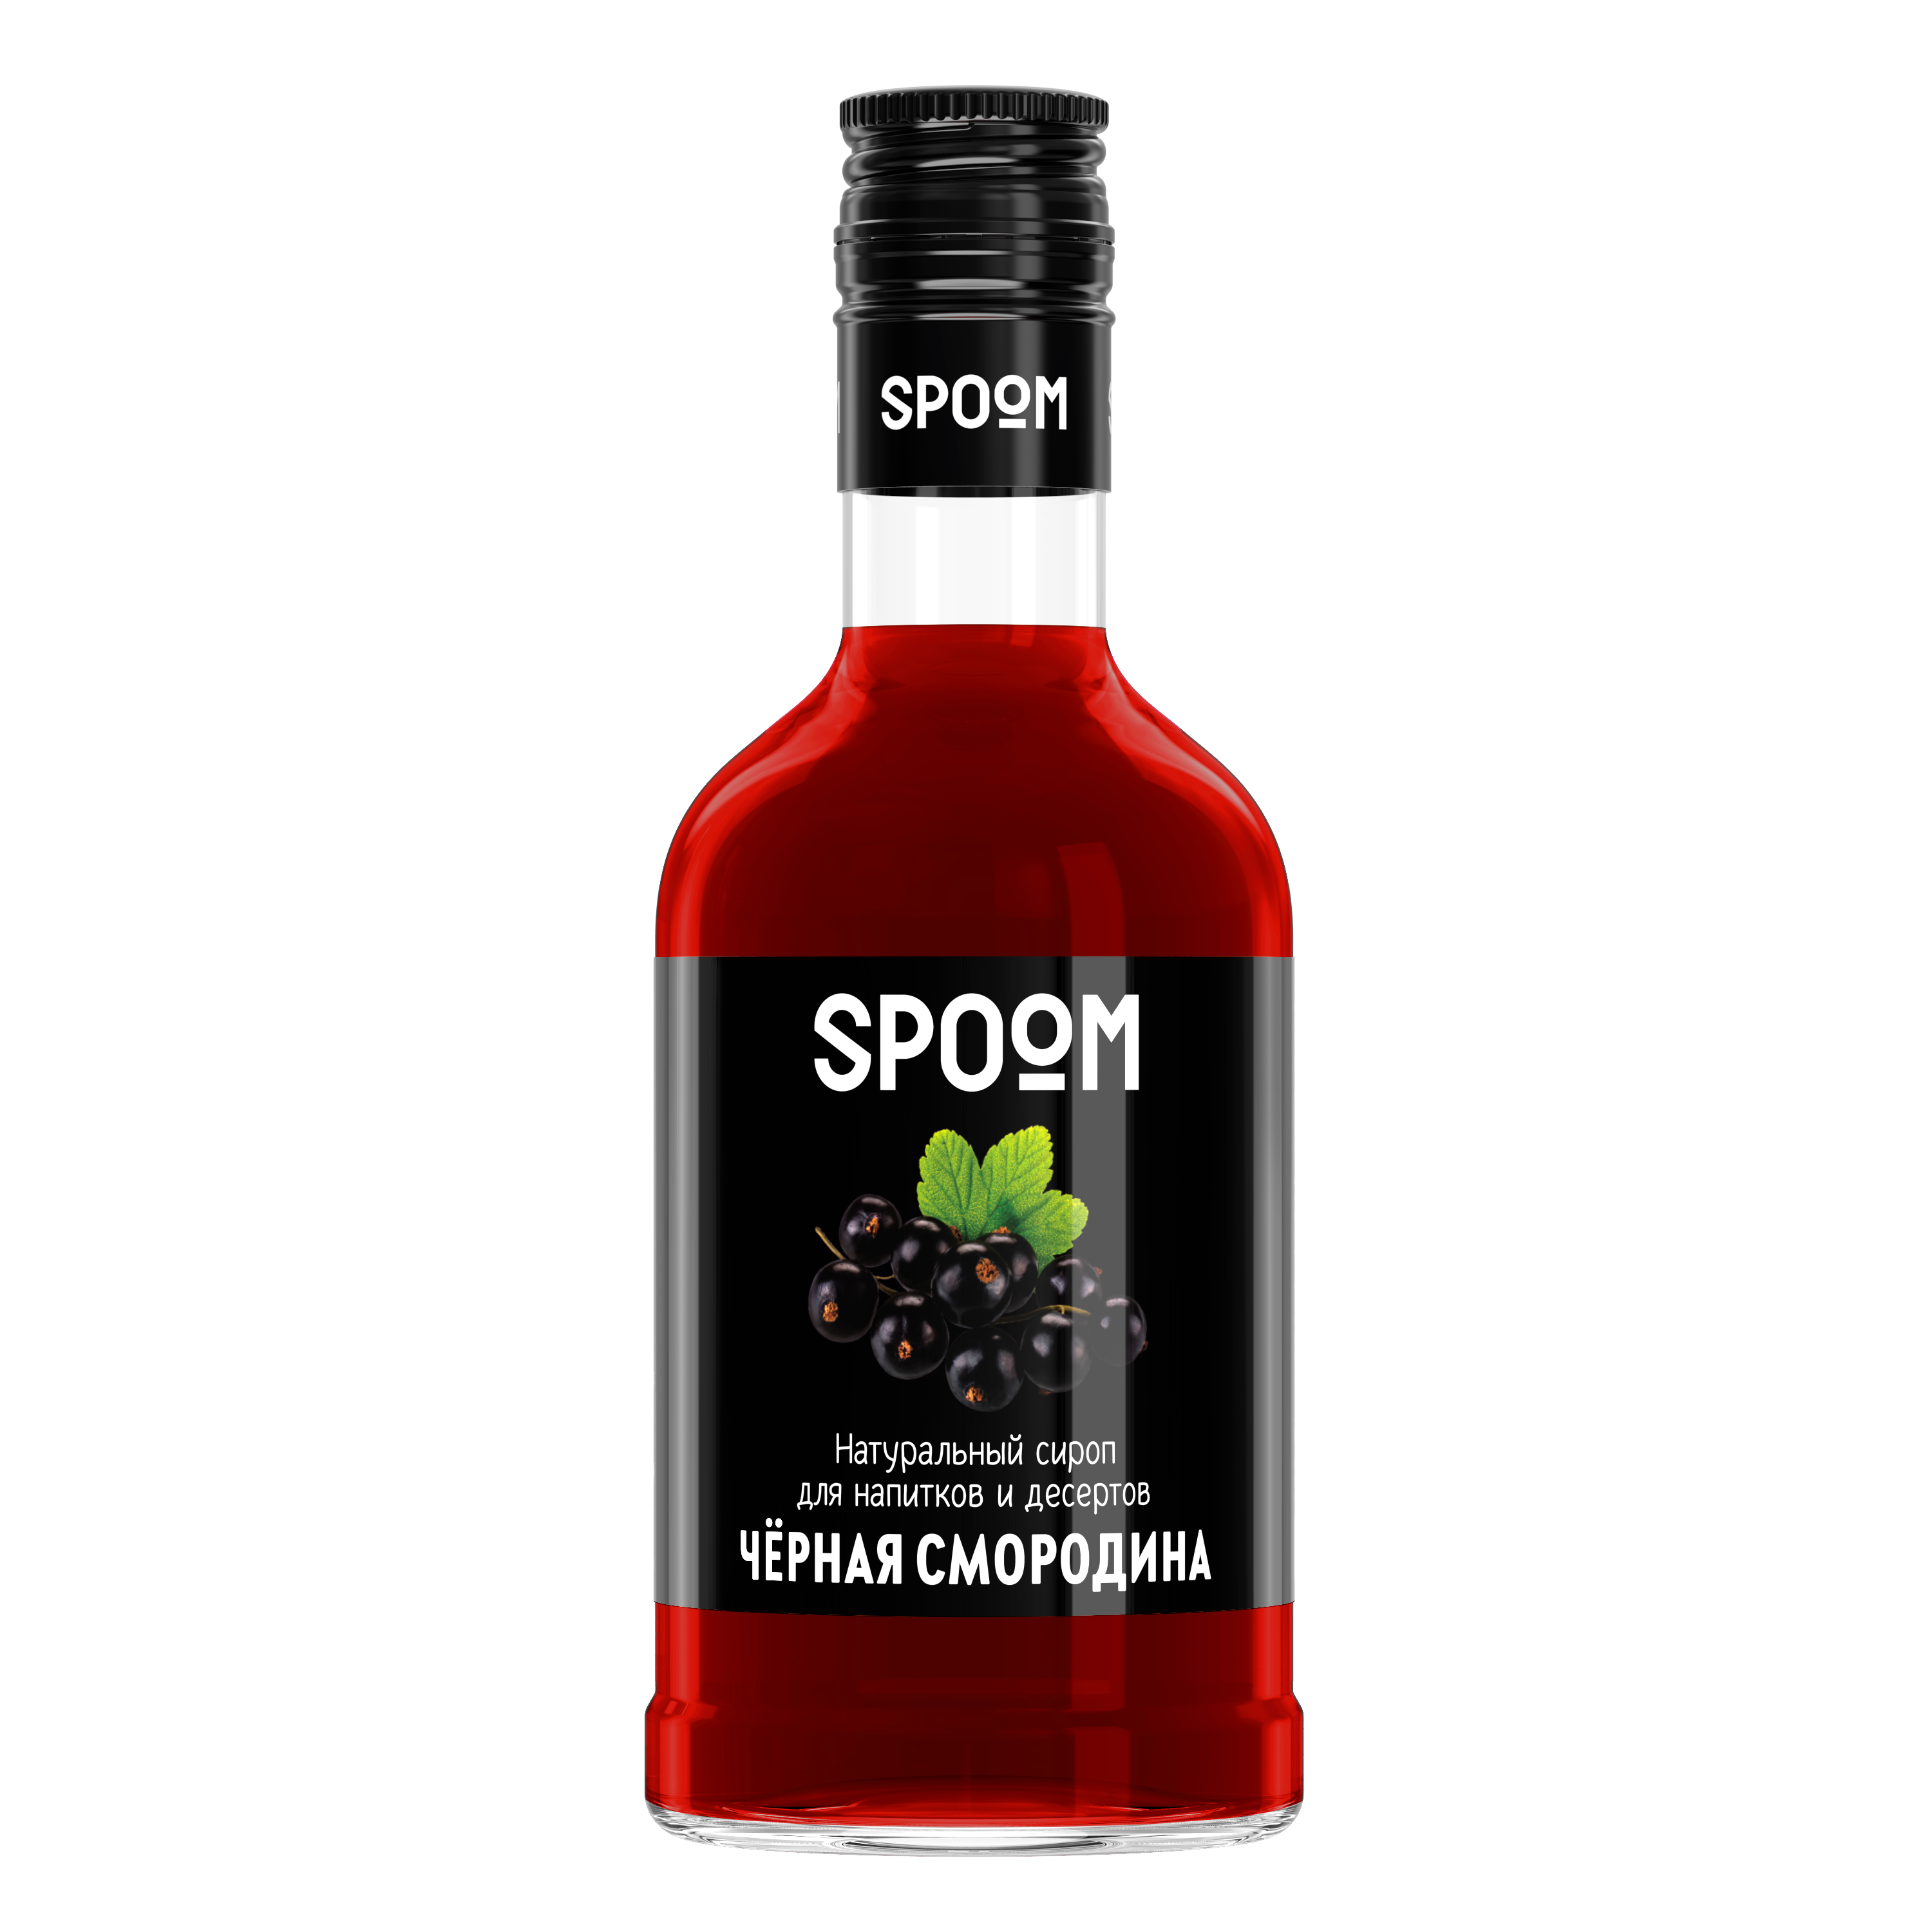 Сироп Spoom Черная смородина, 1 бутылка - 250 мл